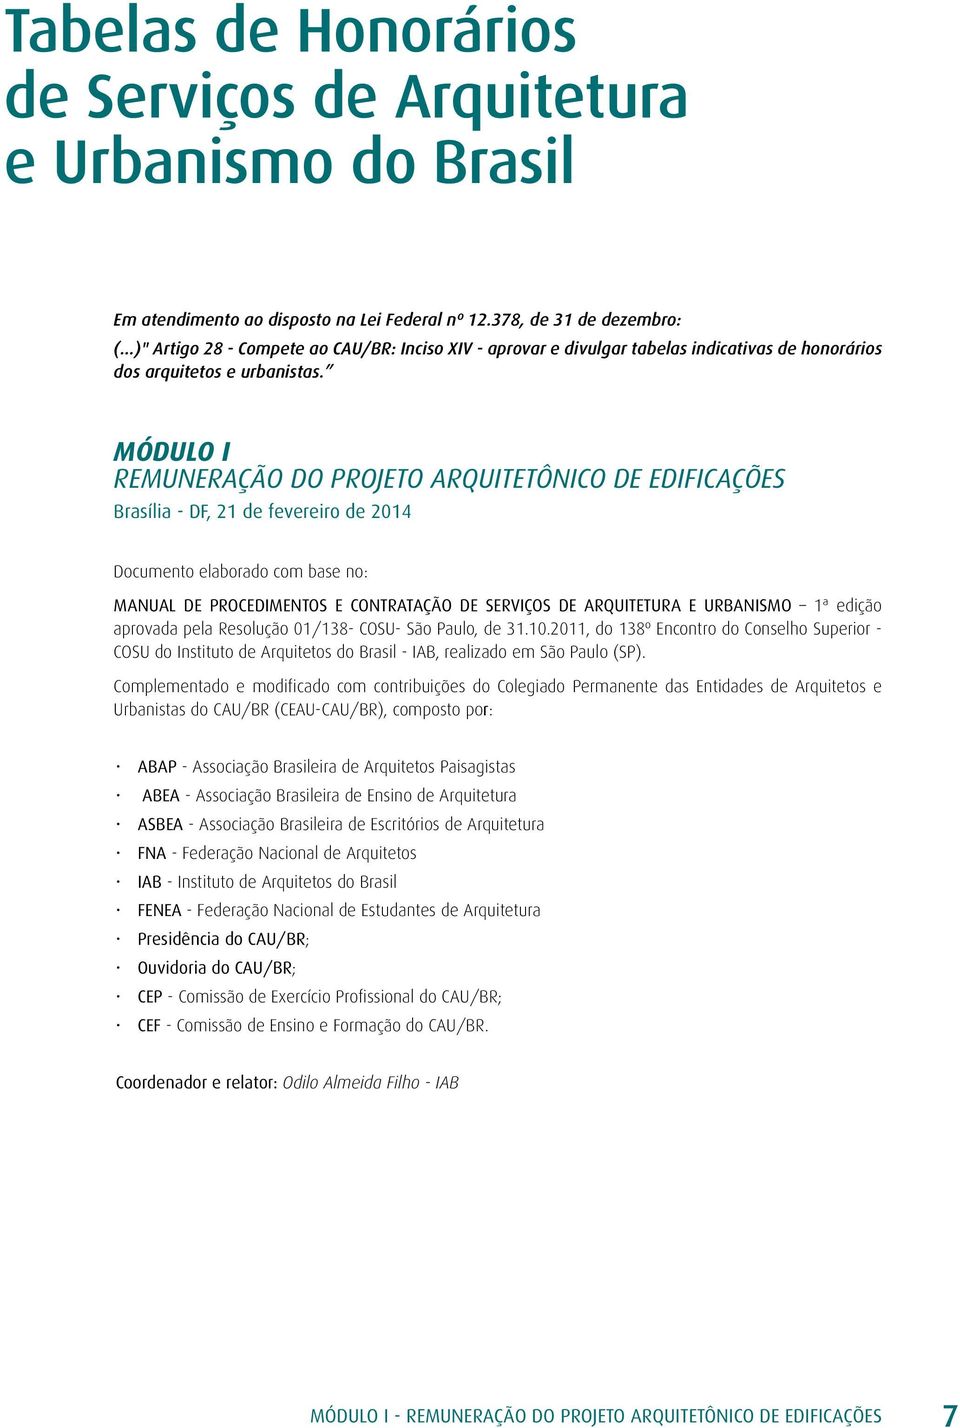 MÓDULO I REMUNERAÇÃO DO PROJETO ARQUITETÔNICO DE EDIFICAÇÕES Brasília - DF, 21 de fevereiro de 2014 Documento elaborado com base no: MANUAL DE PROCEDIMENTOS E CONTRATAÇÃO DE SERVIÇOS DE ARQUITETURA E